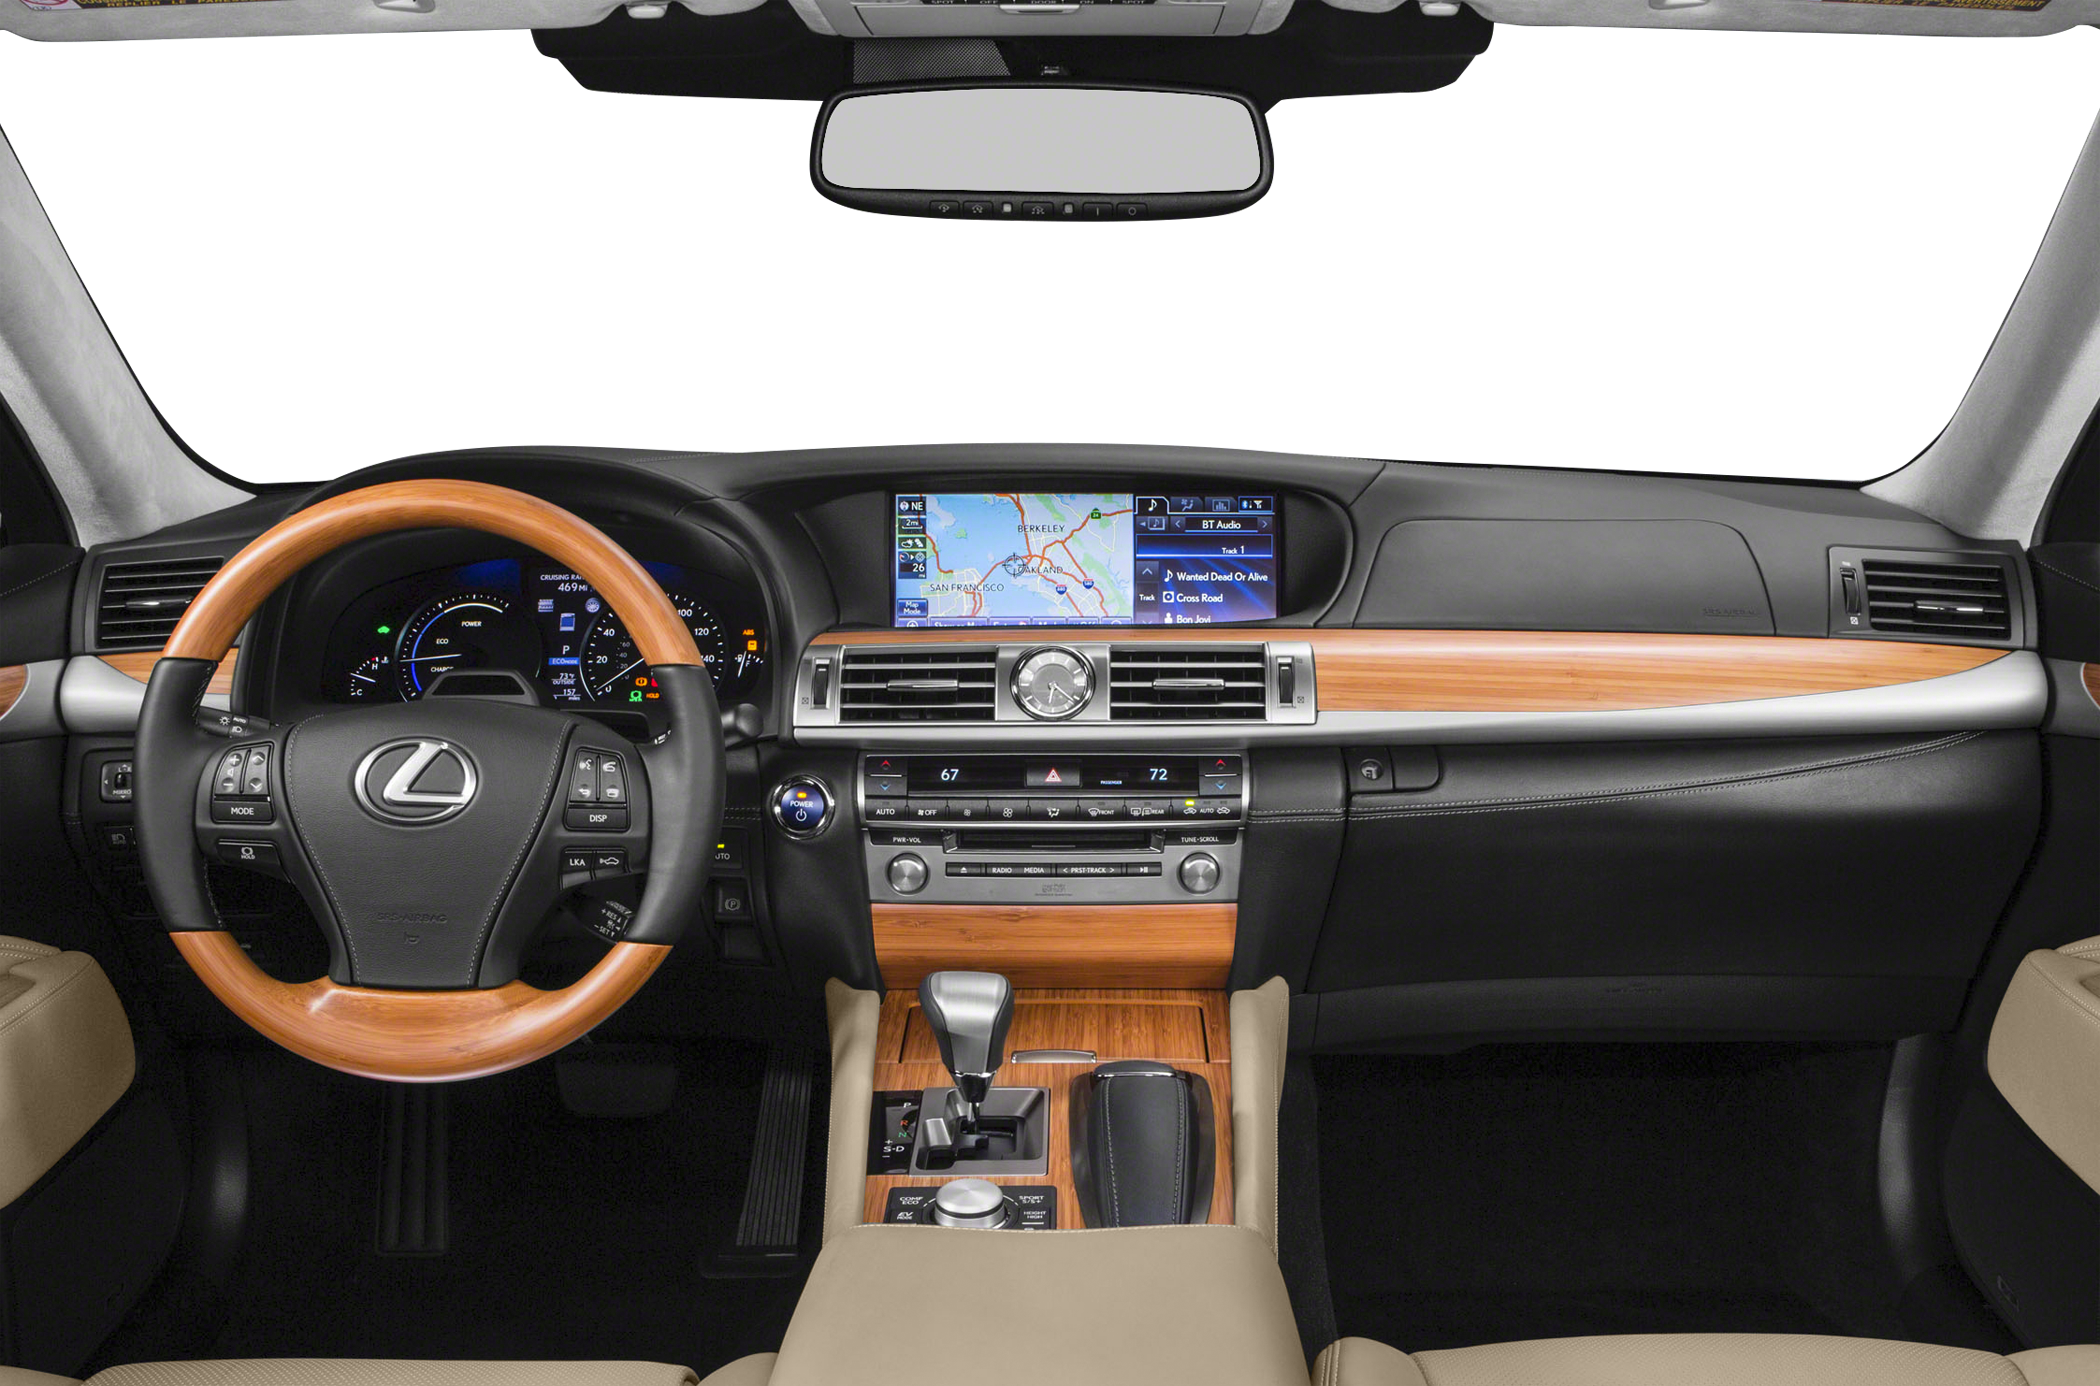 2015 Lexus LS 600h L